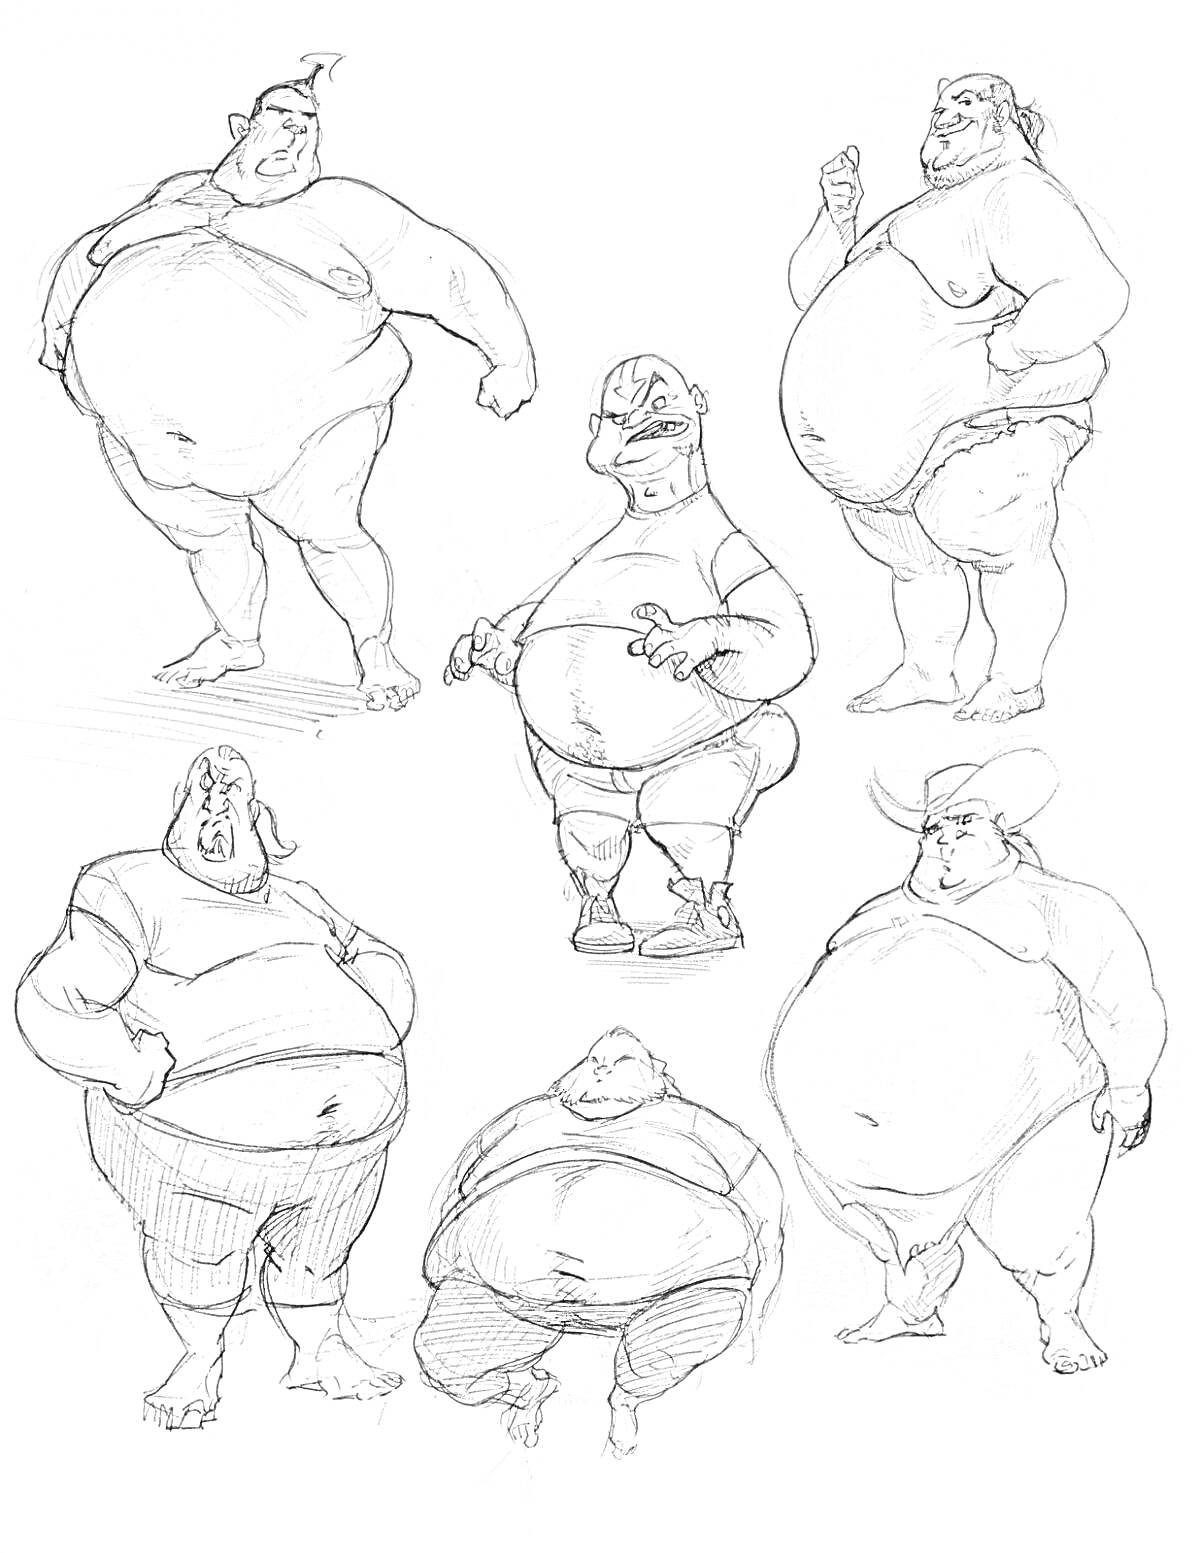 Раскраска Шесть толстых мужчин с различными выражениями лиц и позами